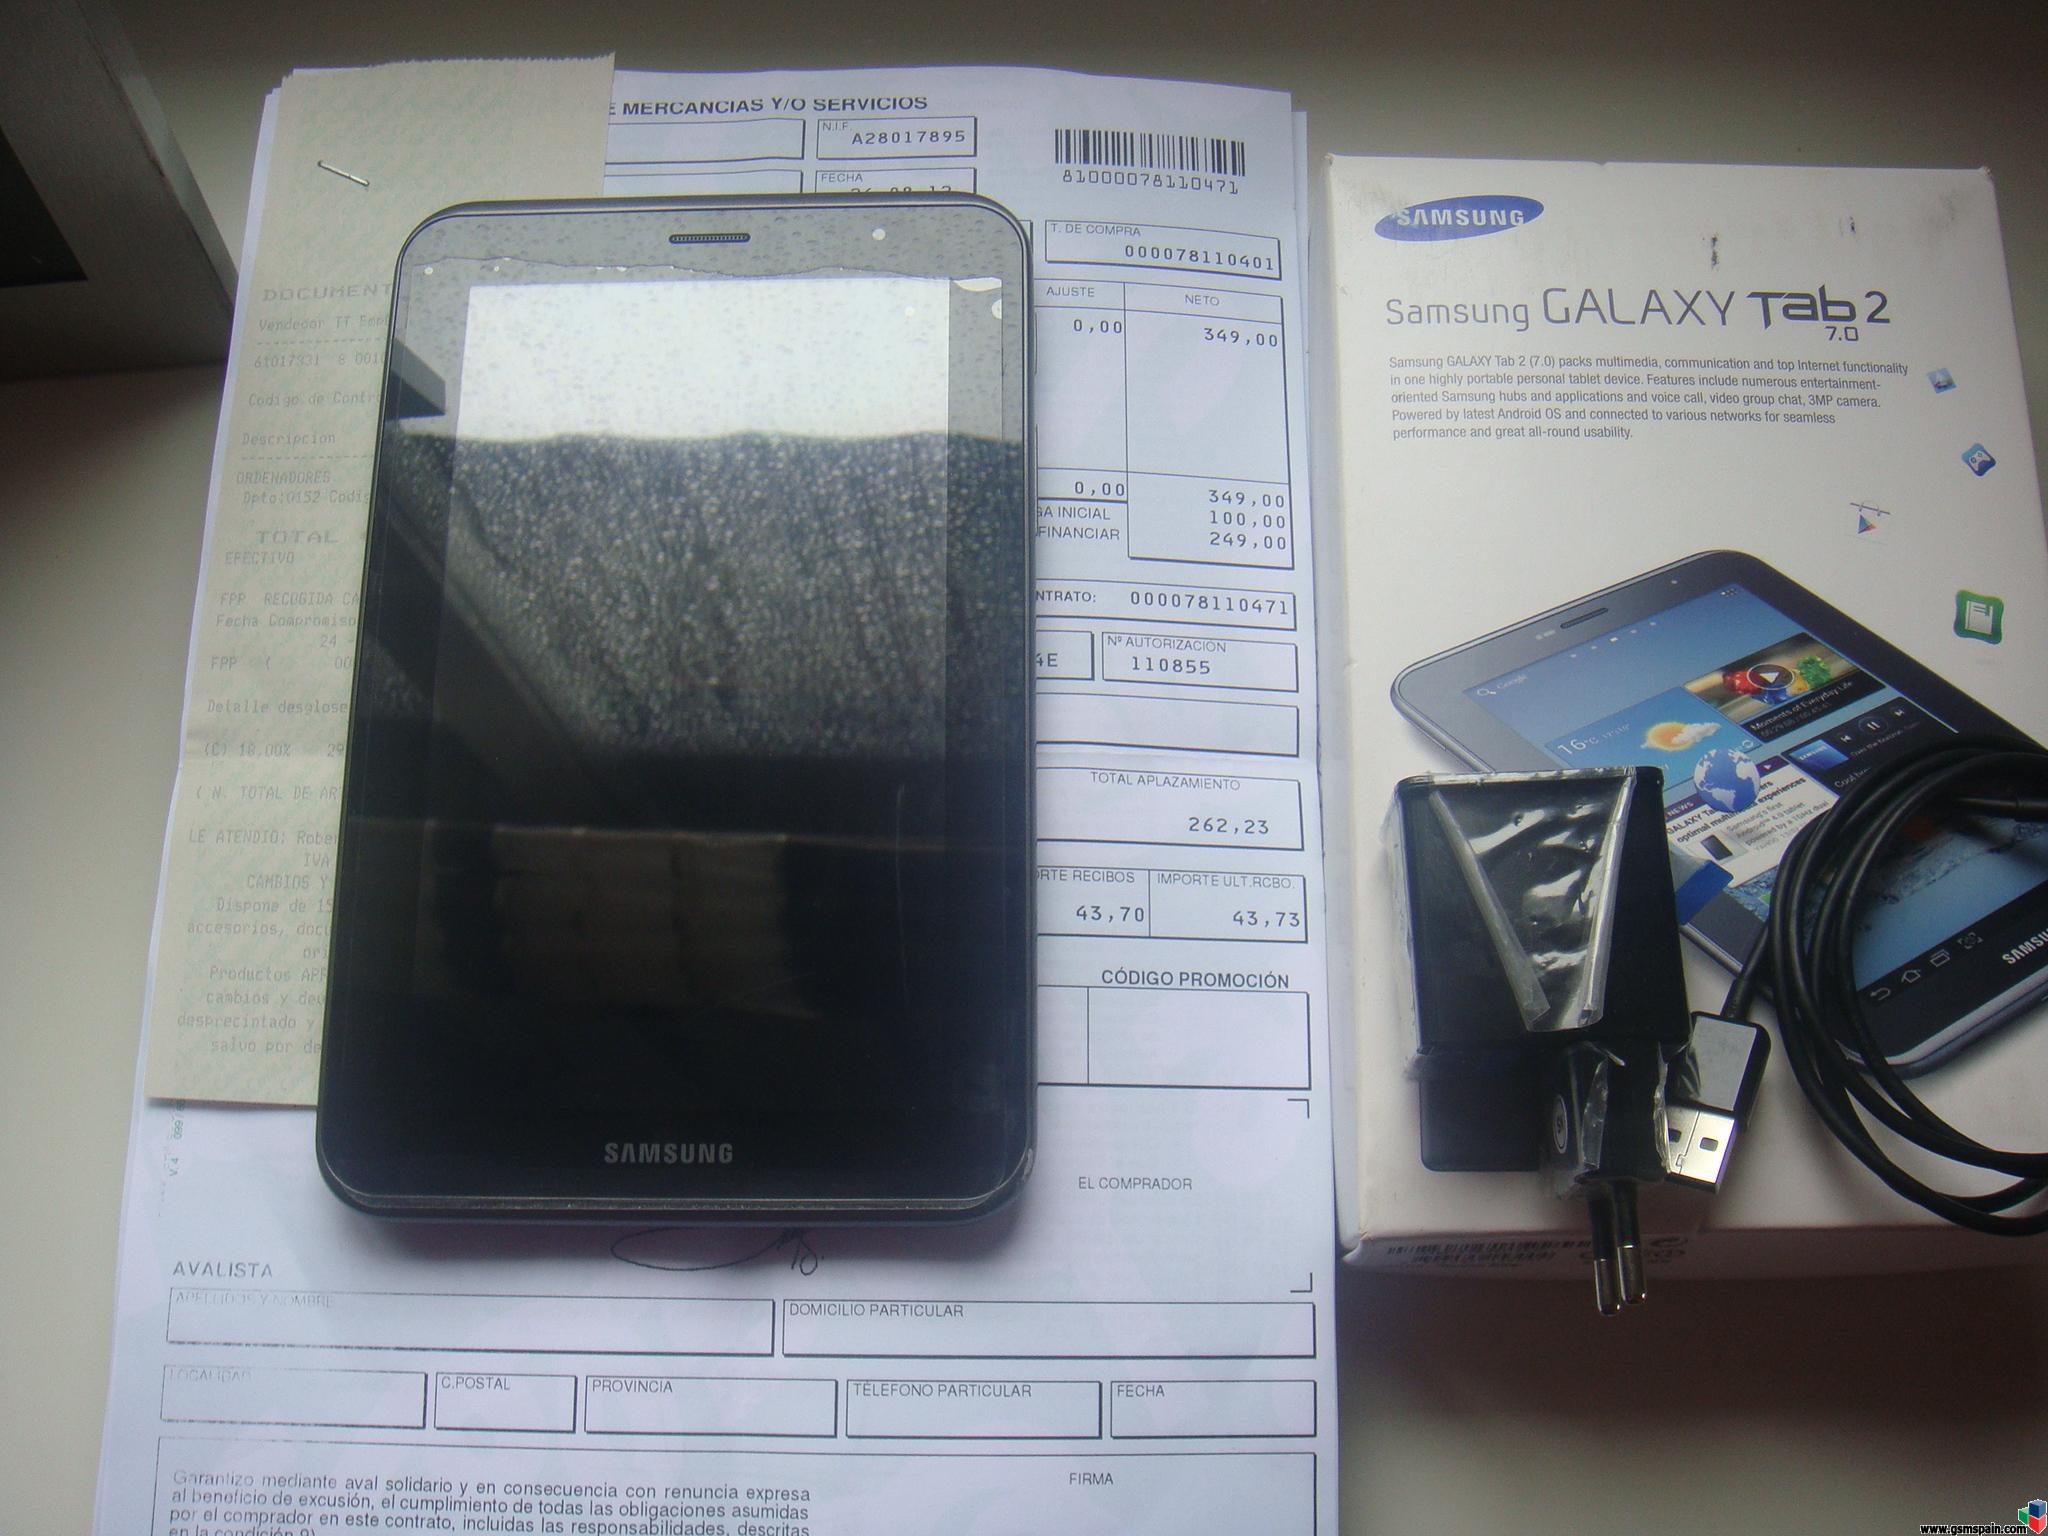 [VENDO] Samsung Galaxy tab 2, 7.0, wifi y 3g Libre de origen, fotos dentro